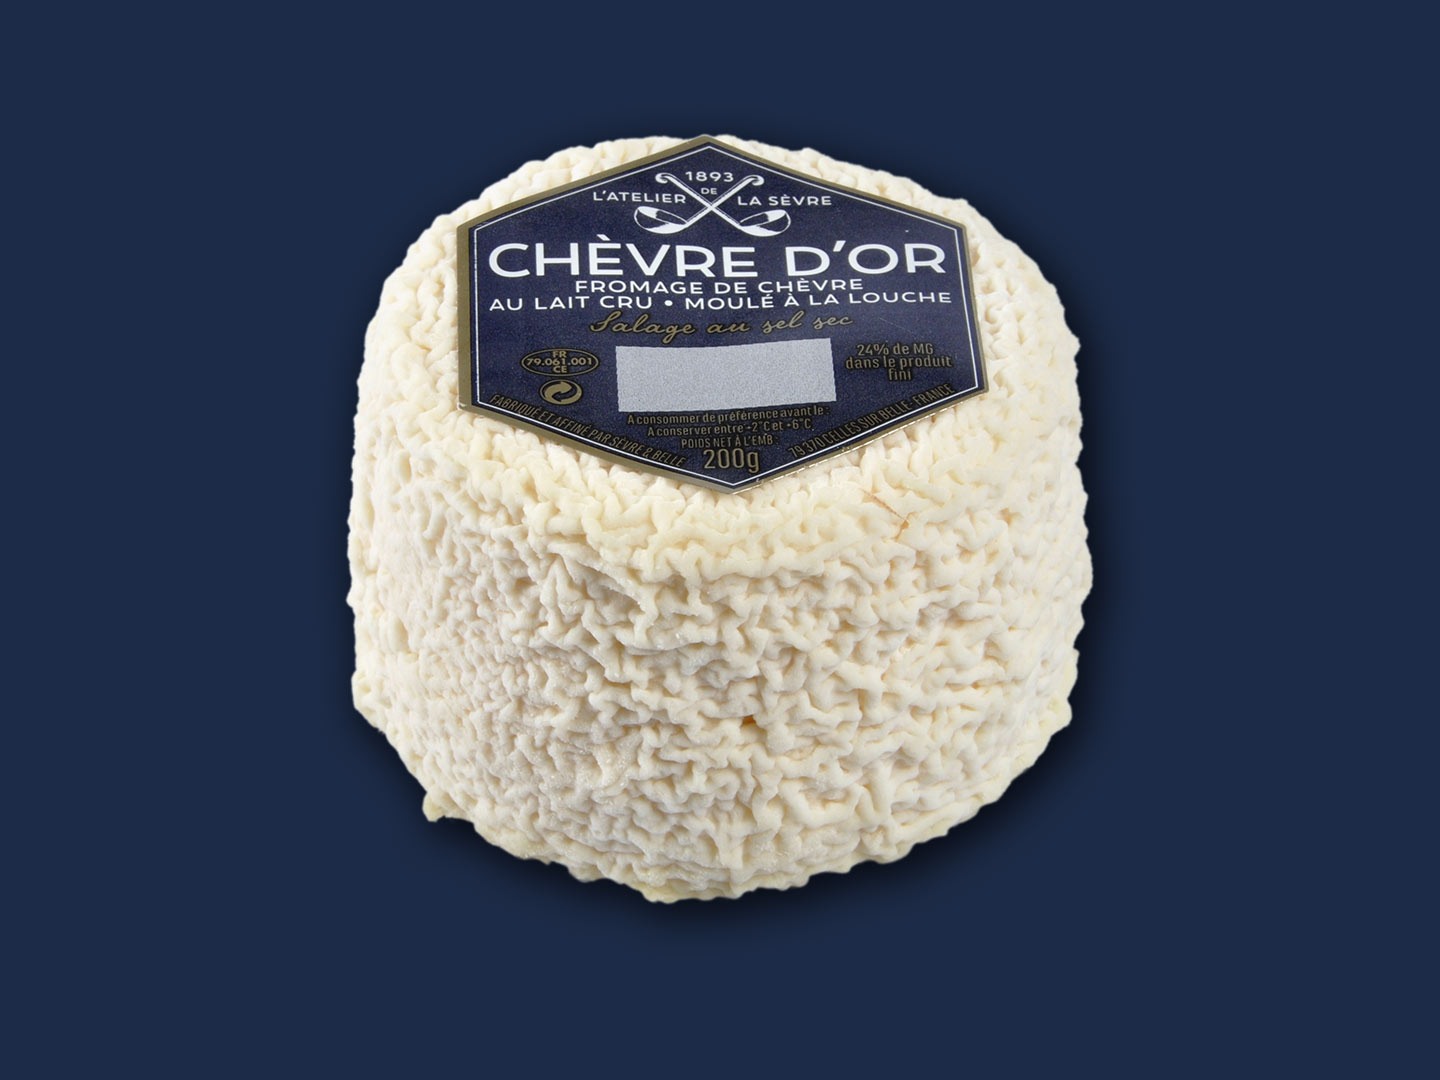 Le Chèvre d'or nature 200g - fromage de chèvre au lait-cru - moulé à la louche - Atelier de la sèvre